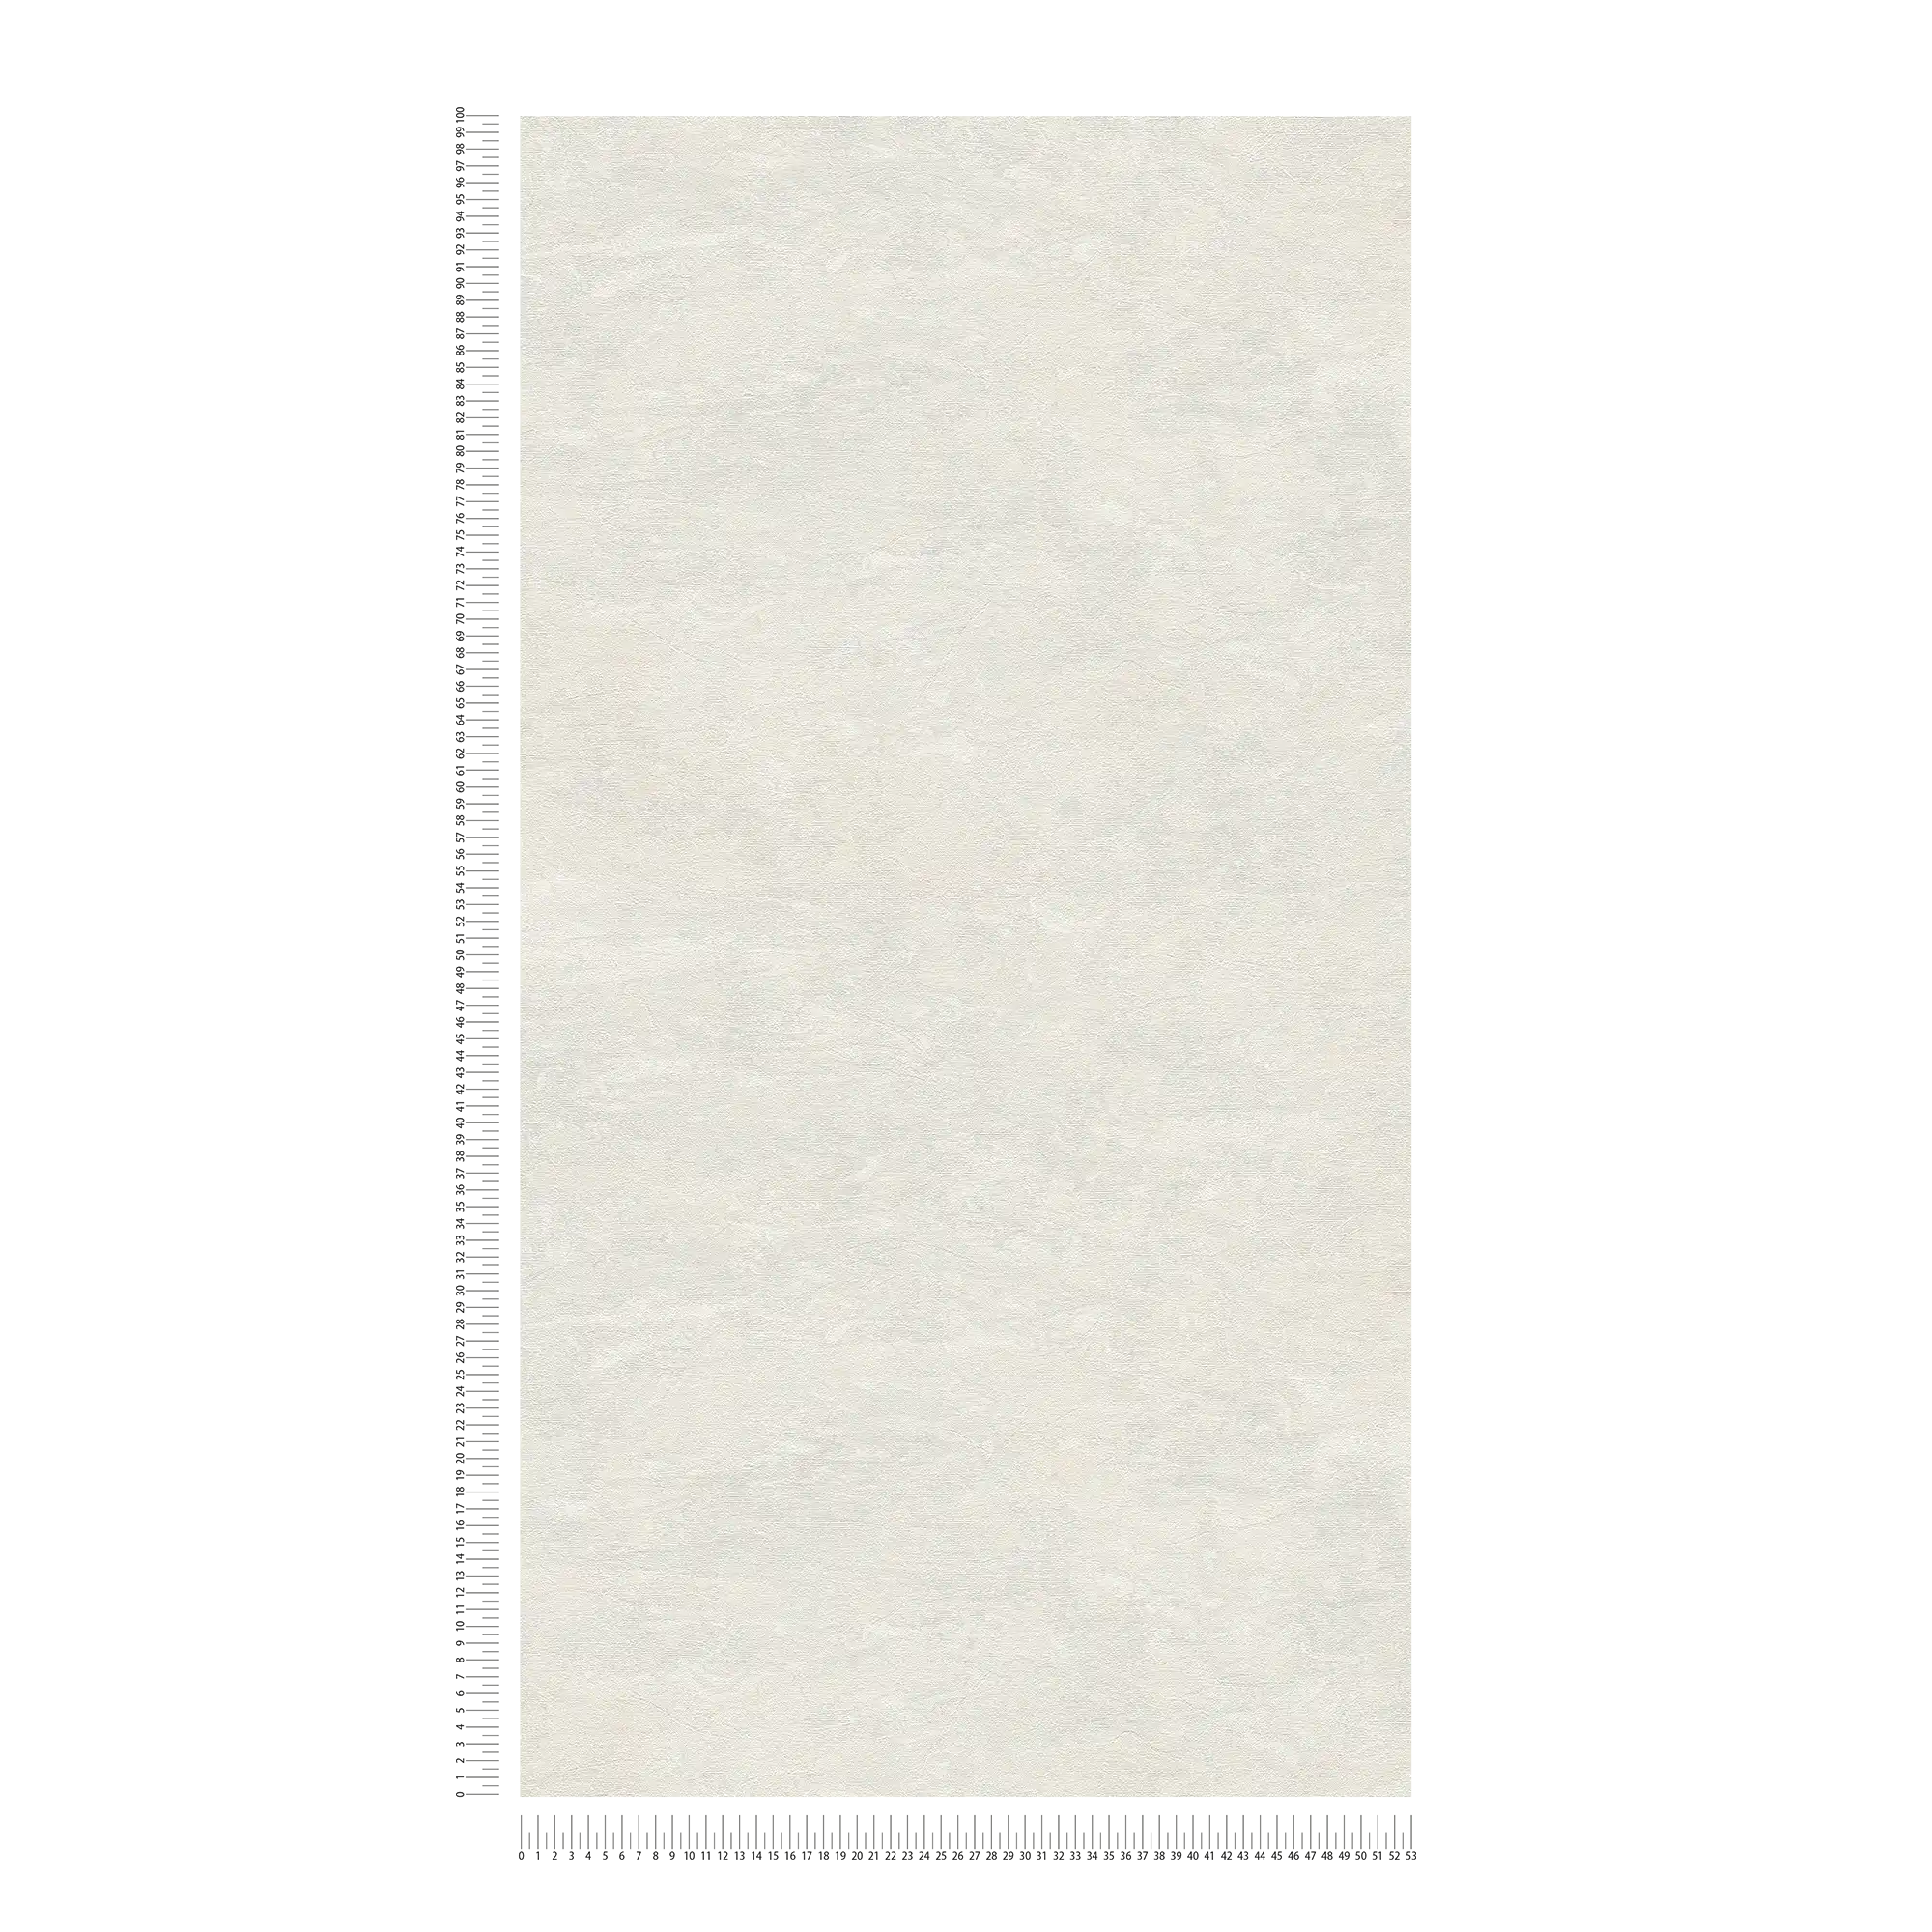             Carta da parati bianca e cremosa con sottile marmorizzazione - bianco, grigio
        